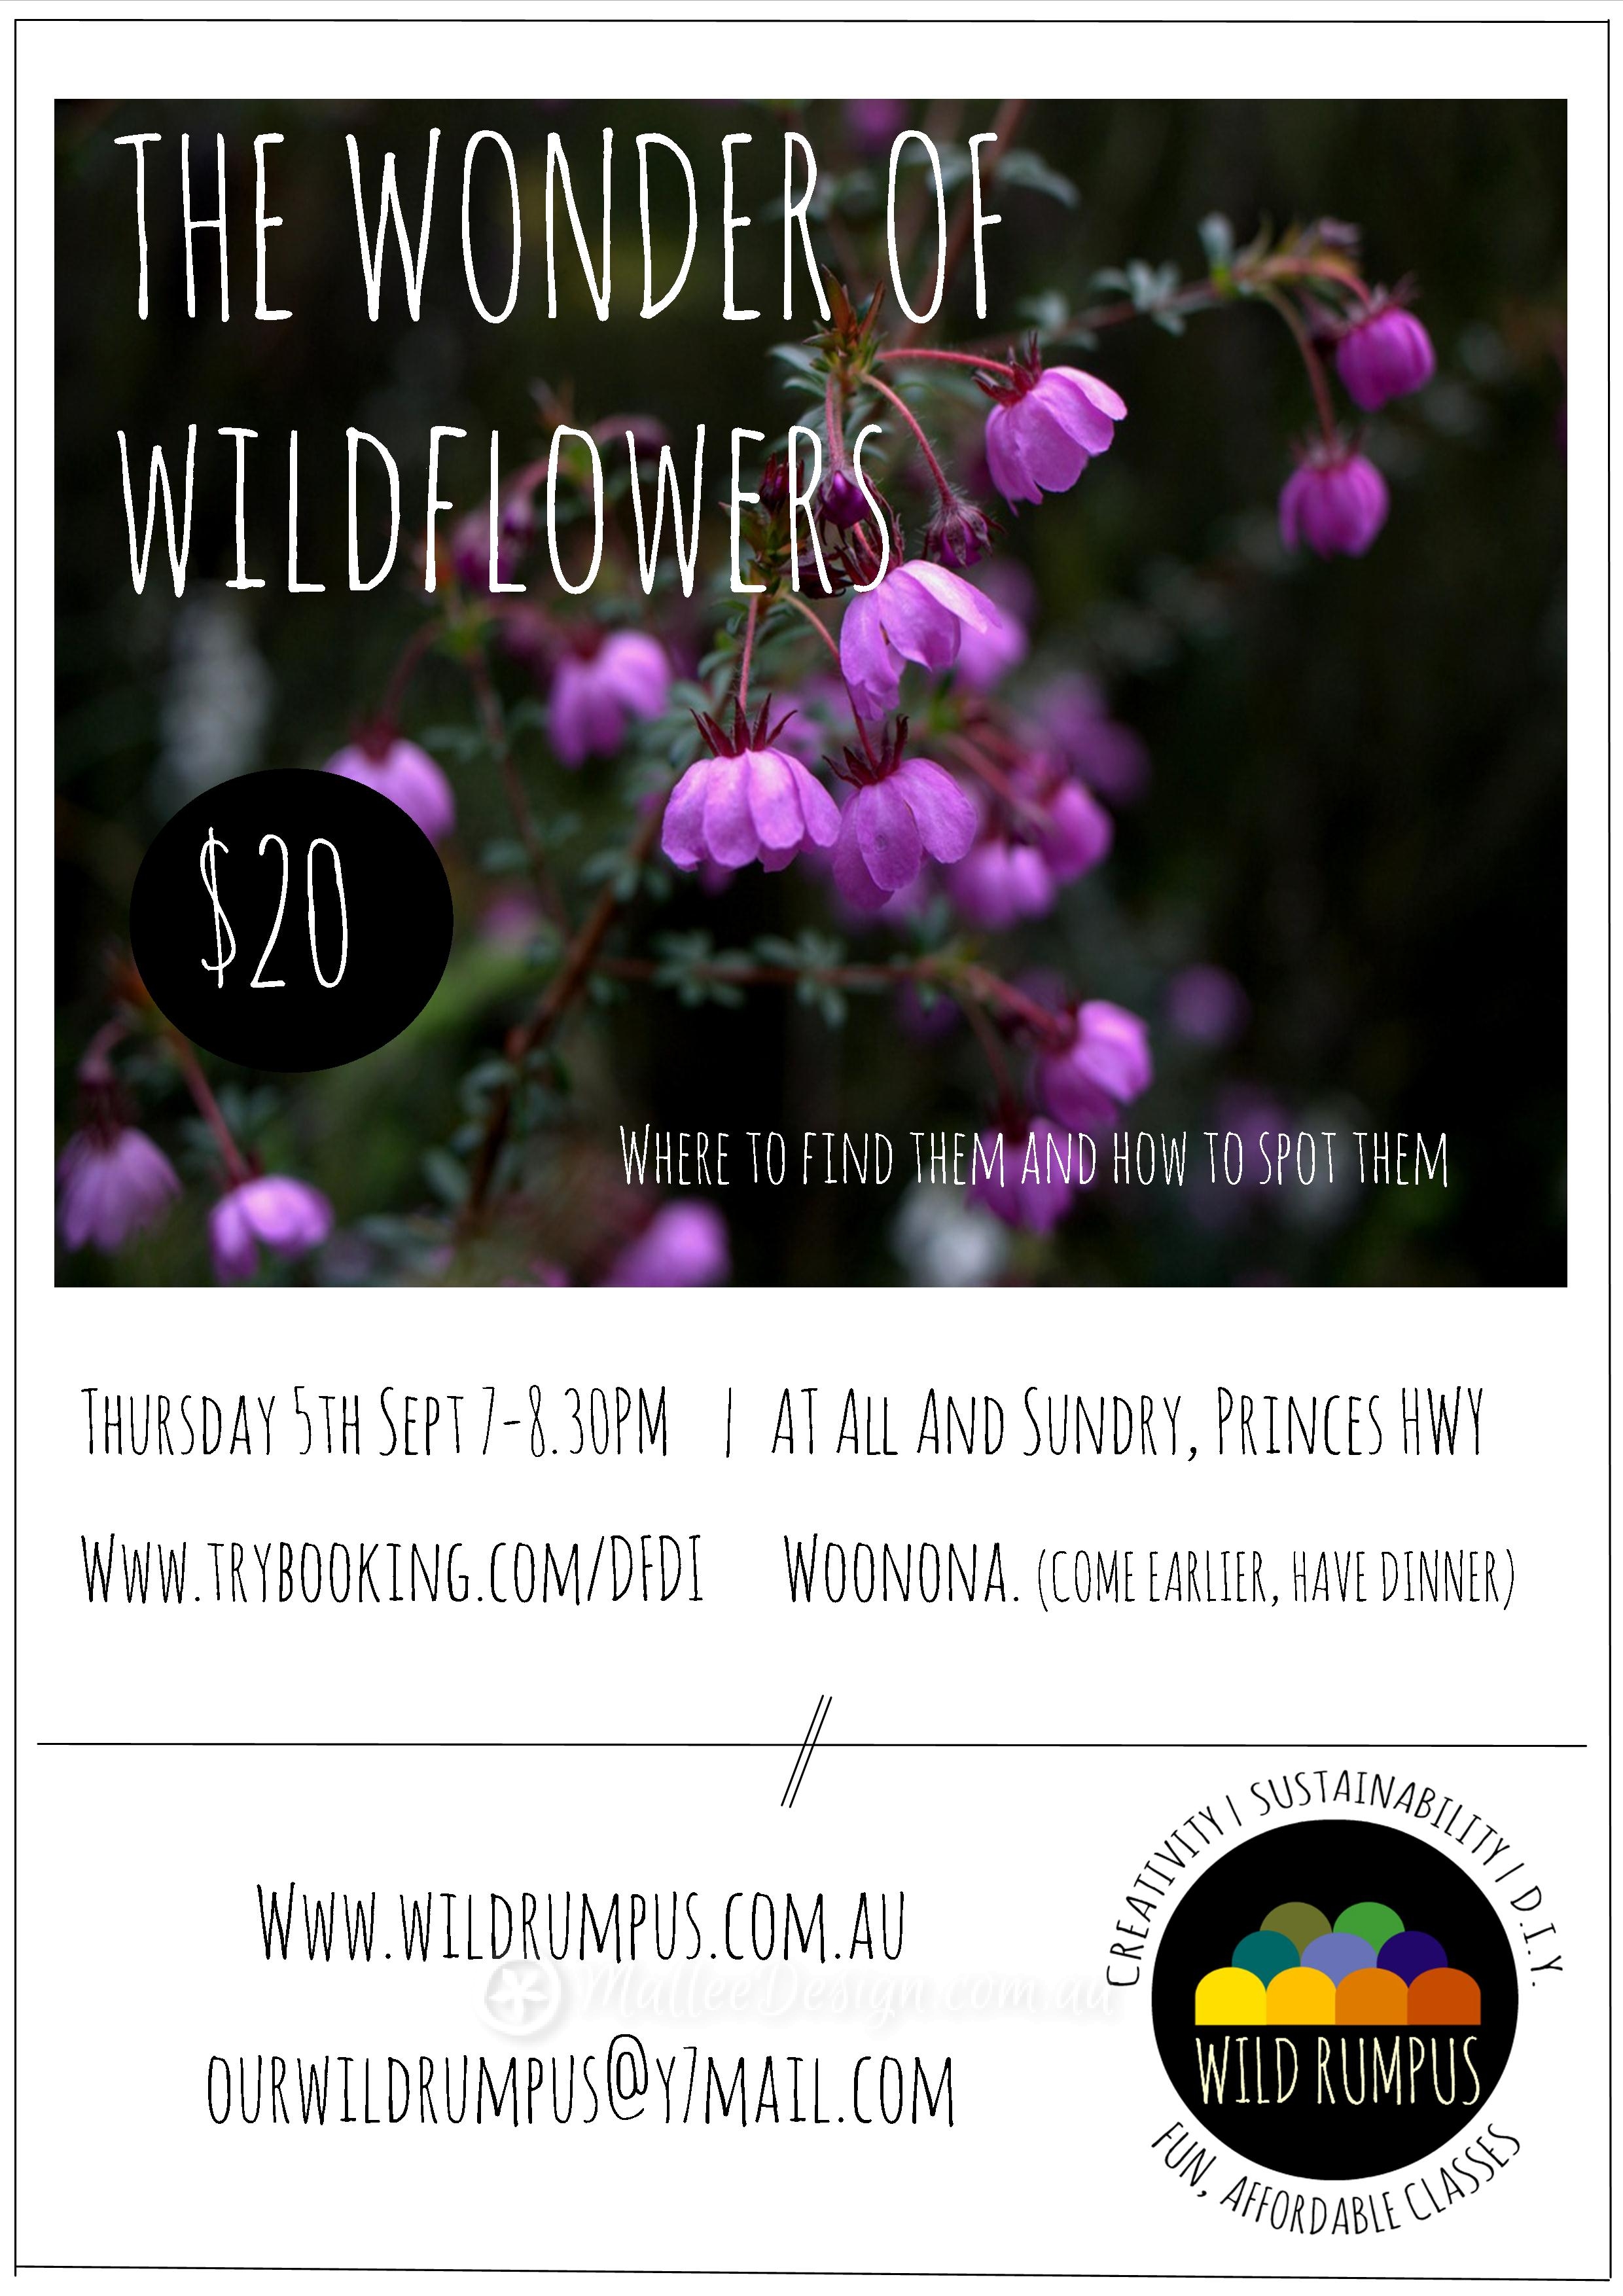 The Wonder of Wildflowers!